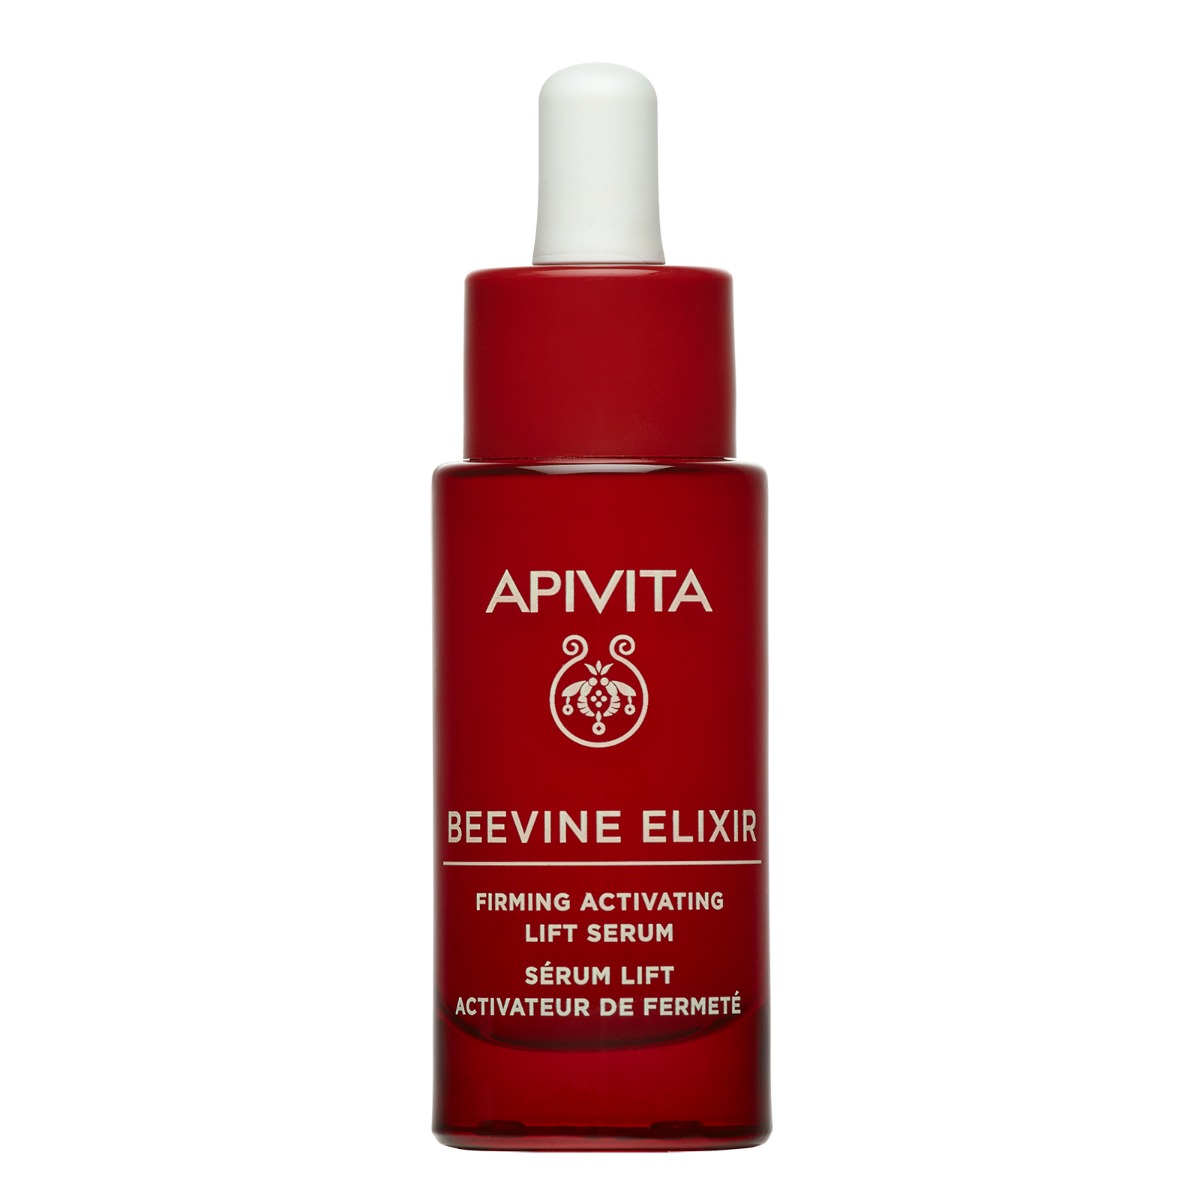 APIVITA Beevine Elixir firming activating lift serum 30 ml